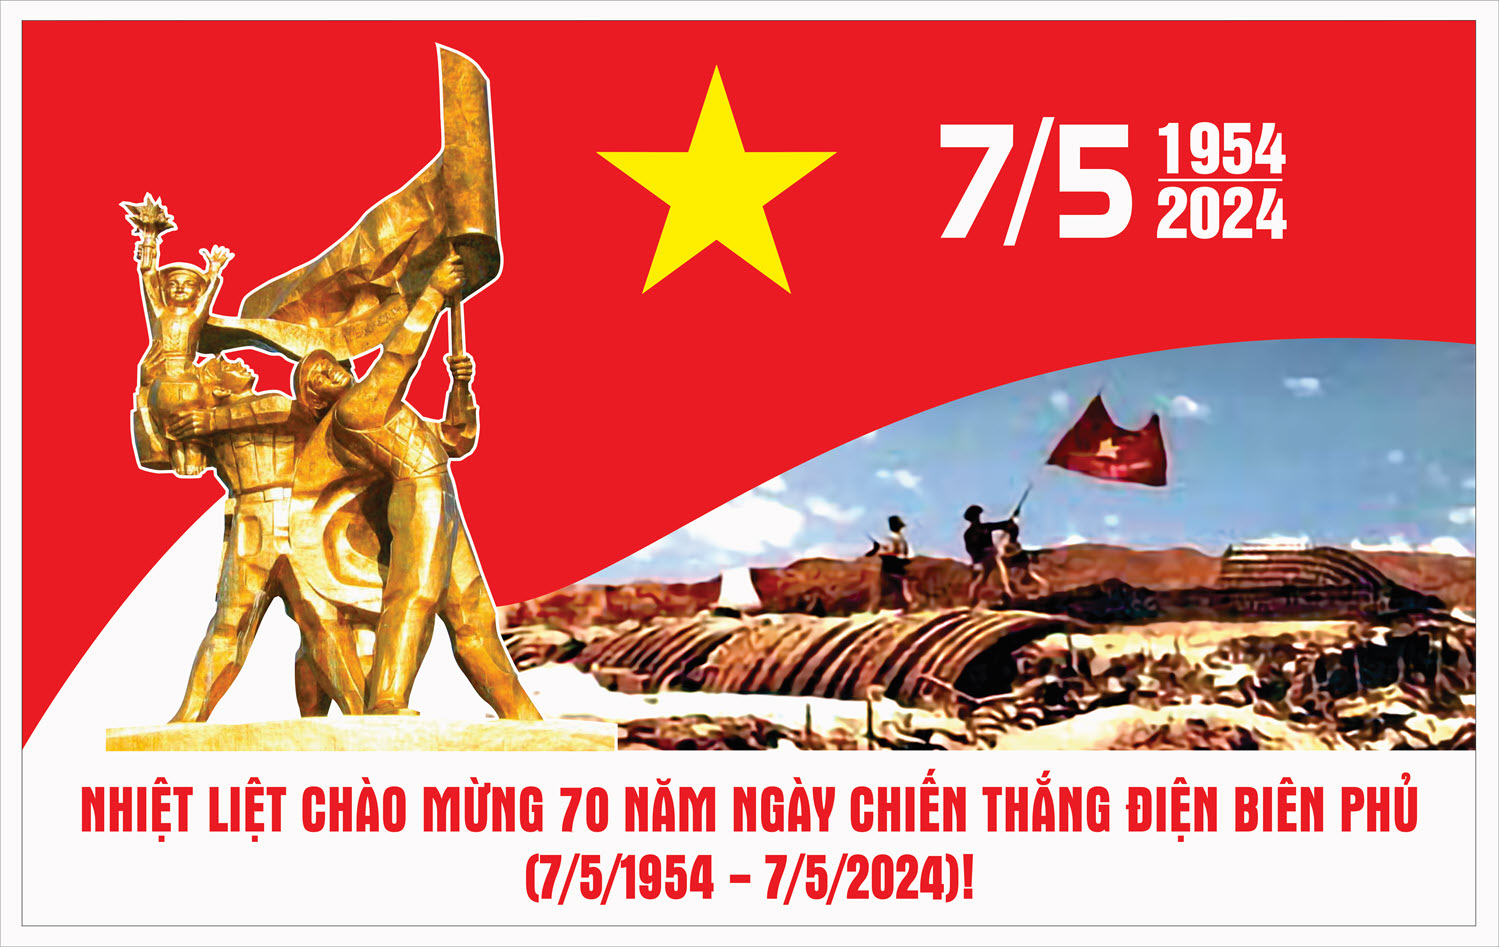 Nhiệt liệt chào mừng 70 năm Ngày chiến thắng Điện Biên Phủ (7/5/1954 - 7/5/2024)